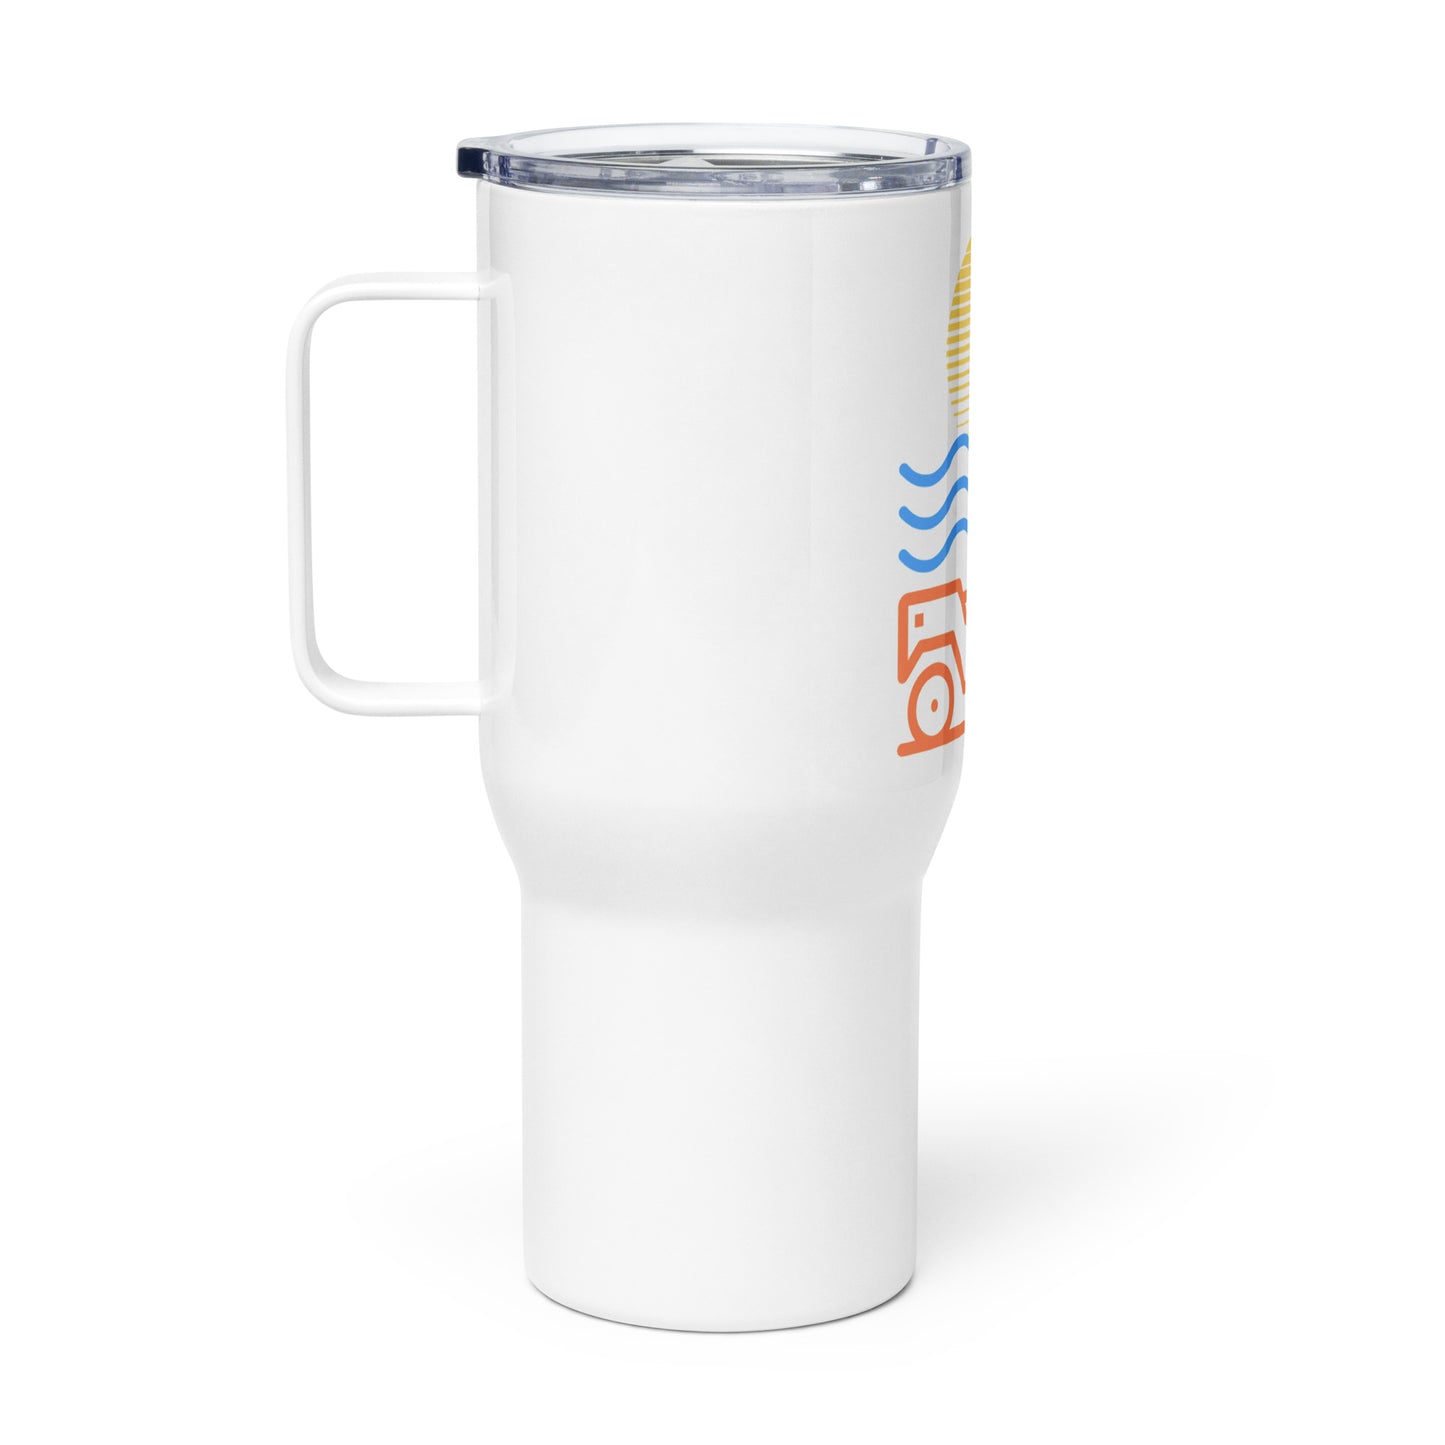 Travel mug with a handle Sun Beach 4x4